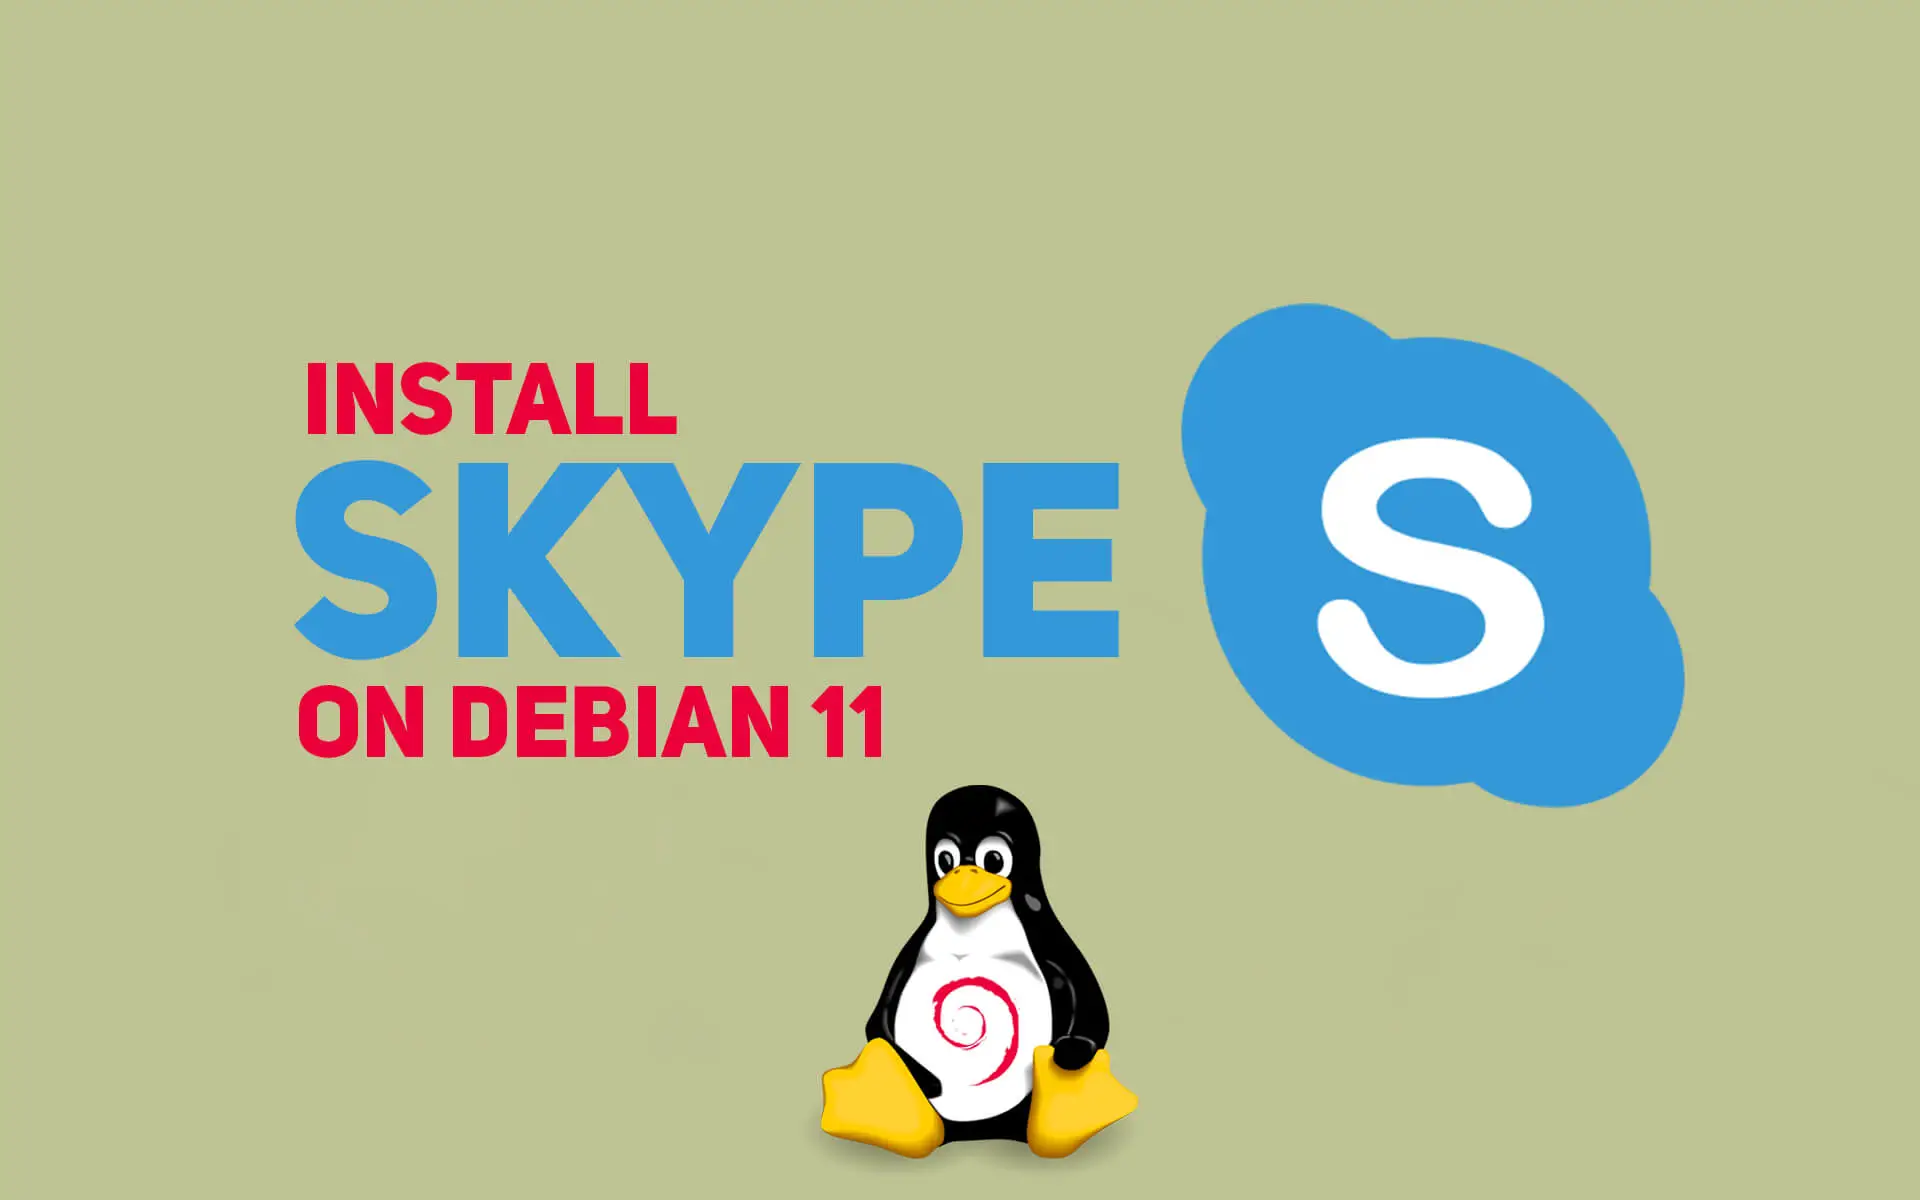 Install Skype on Debian 11